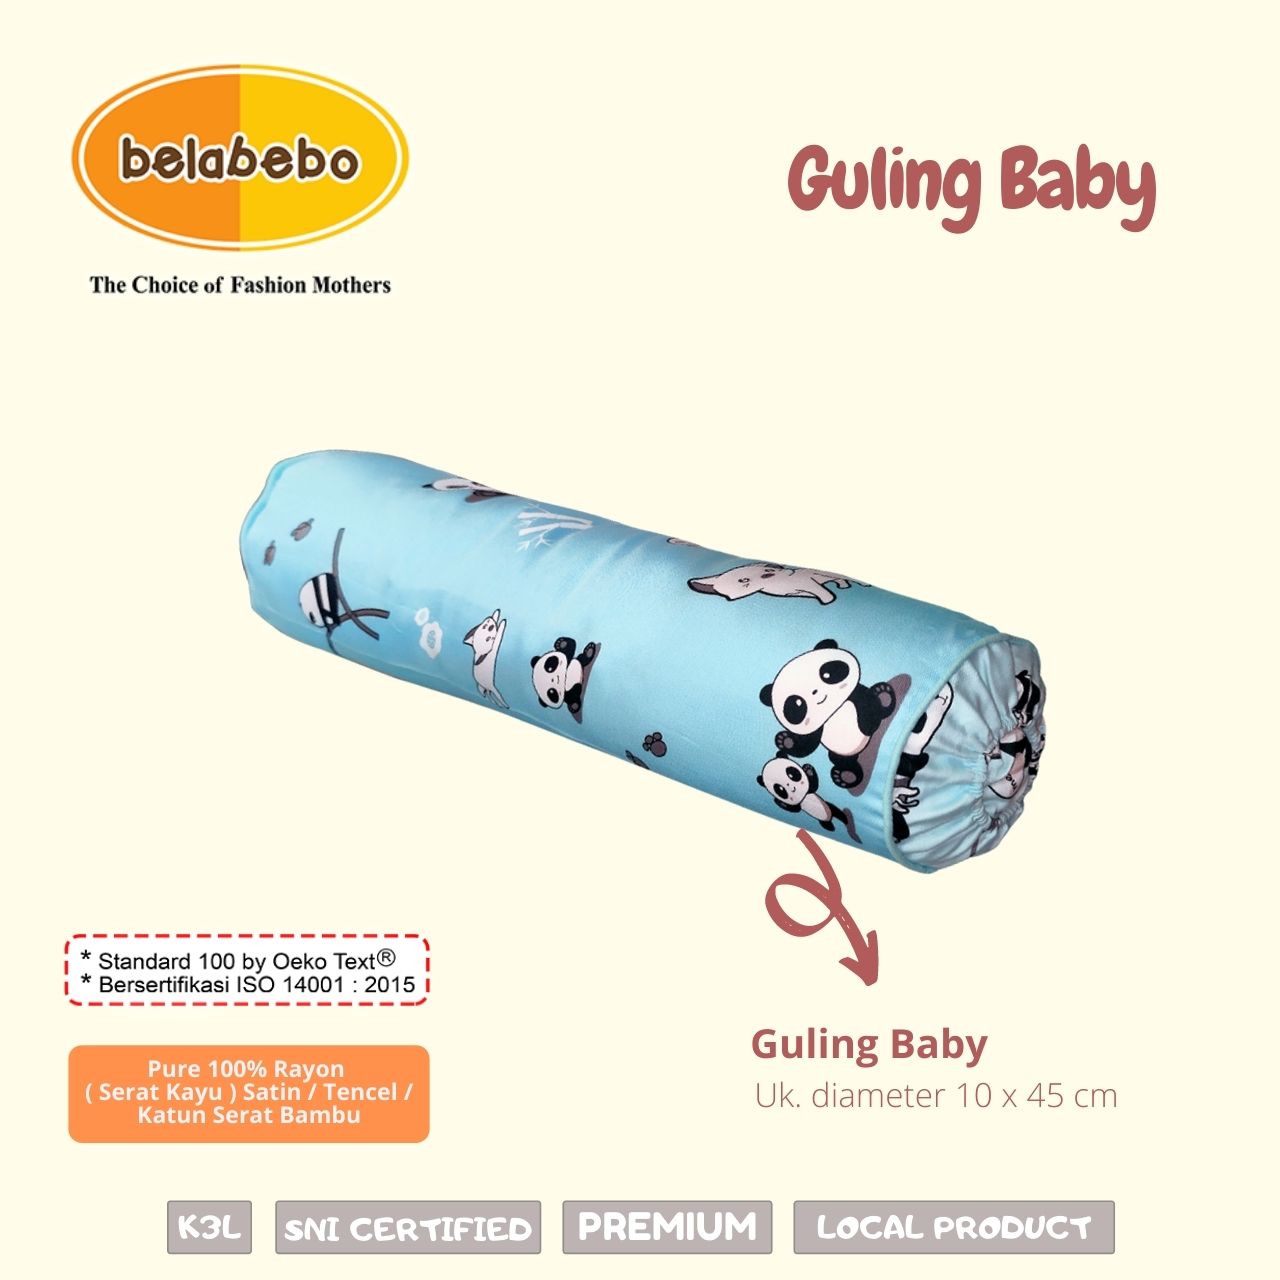 Guling Baby Belabebo